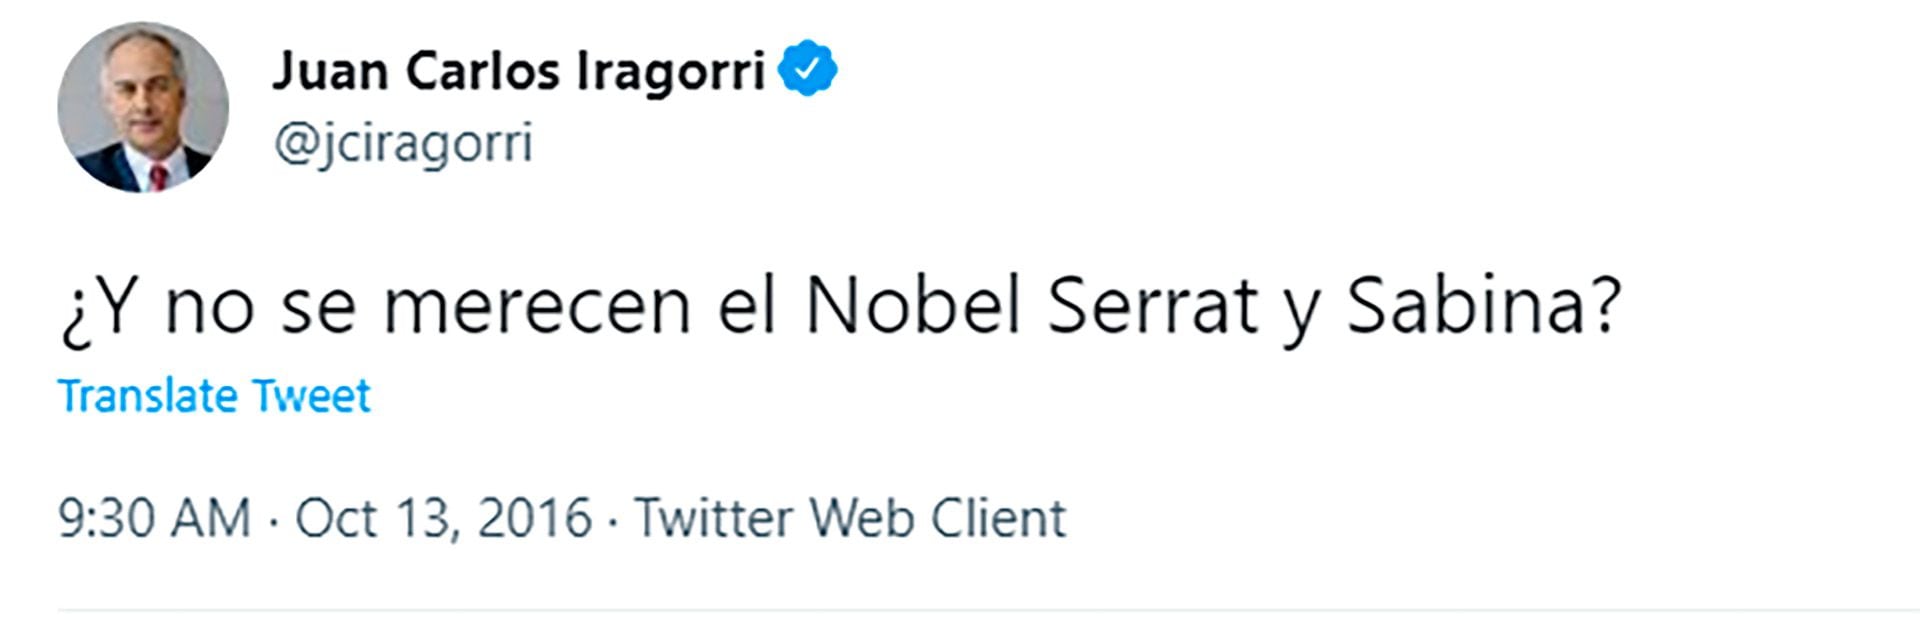 Un tuit que propone la candidatura al Nobel de Literatura de los españoles Serrat y Sabina, luego de que Bob Dylan obtuviera ese premio